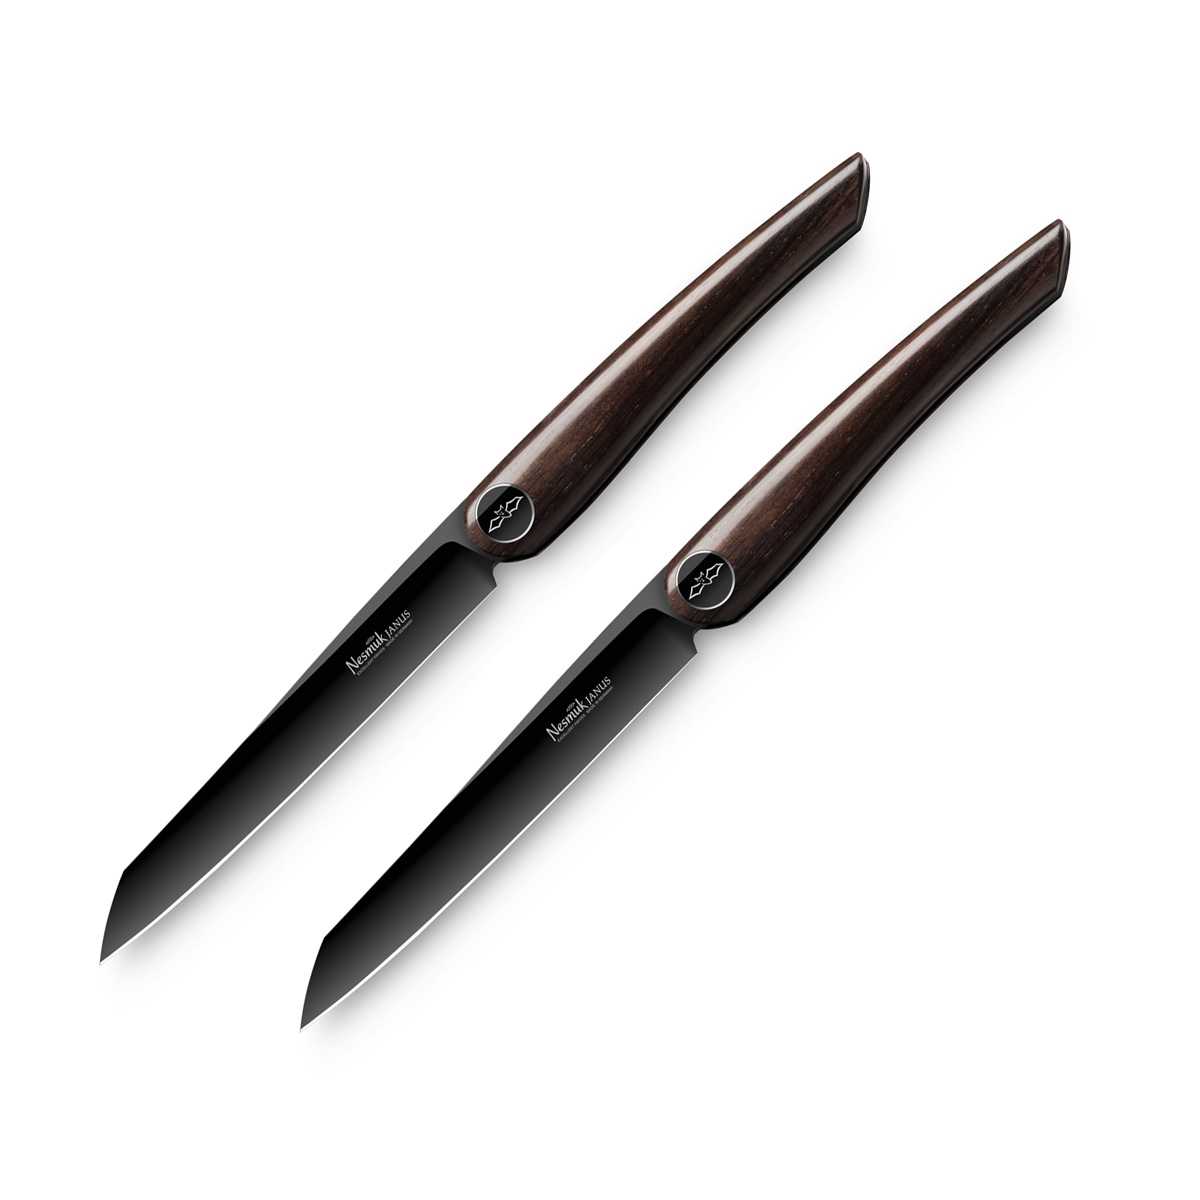 Nesmuk Janus 2-er Set Steakmesser / Tafelmesser 11,5 cm / Spezialstahl mit DLC-Beschichtung und Griff aus Grenadillholz